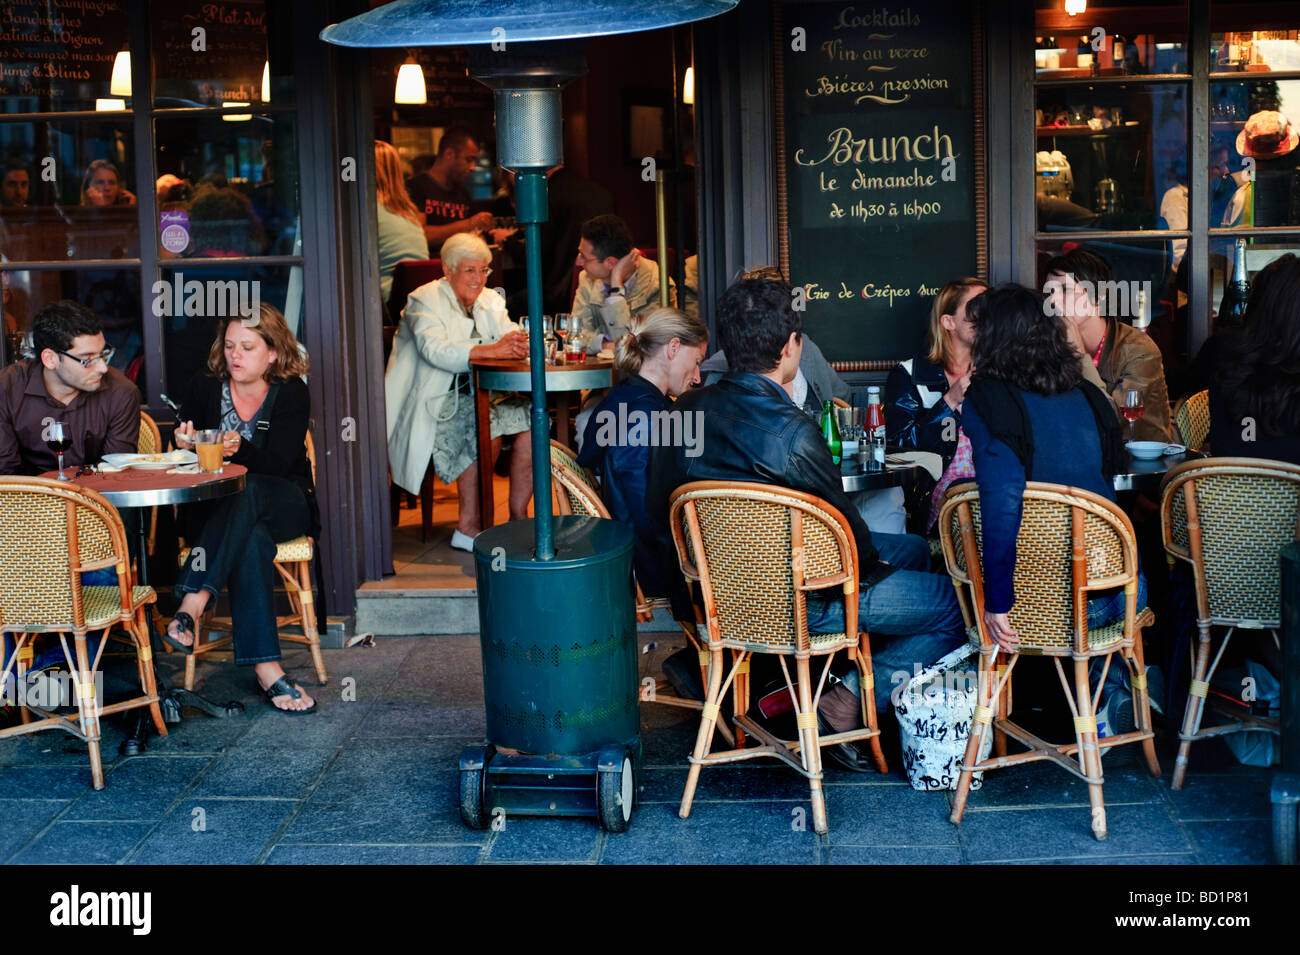 Paris France, People on French Café Bistro Restaurant, affollata terrazza sul marciapiede di fronte, DONNA CHE BEVE ALL'APERTO AL PUB, festivi esterni, fumatori Foto Stock